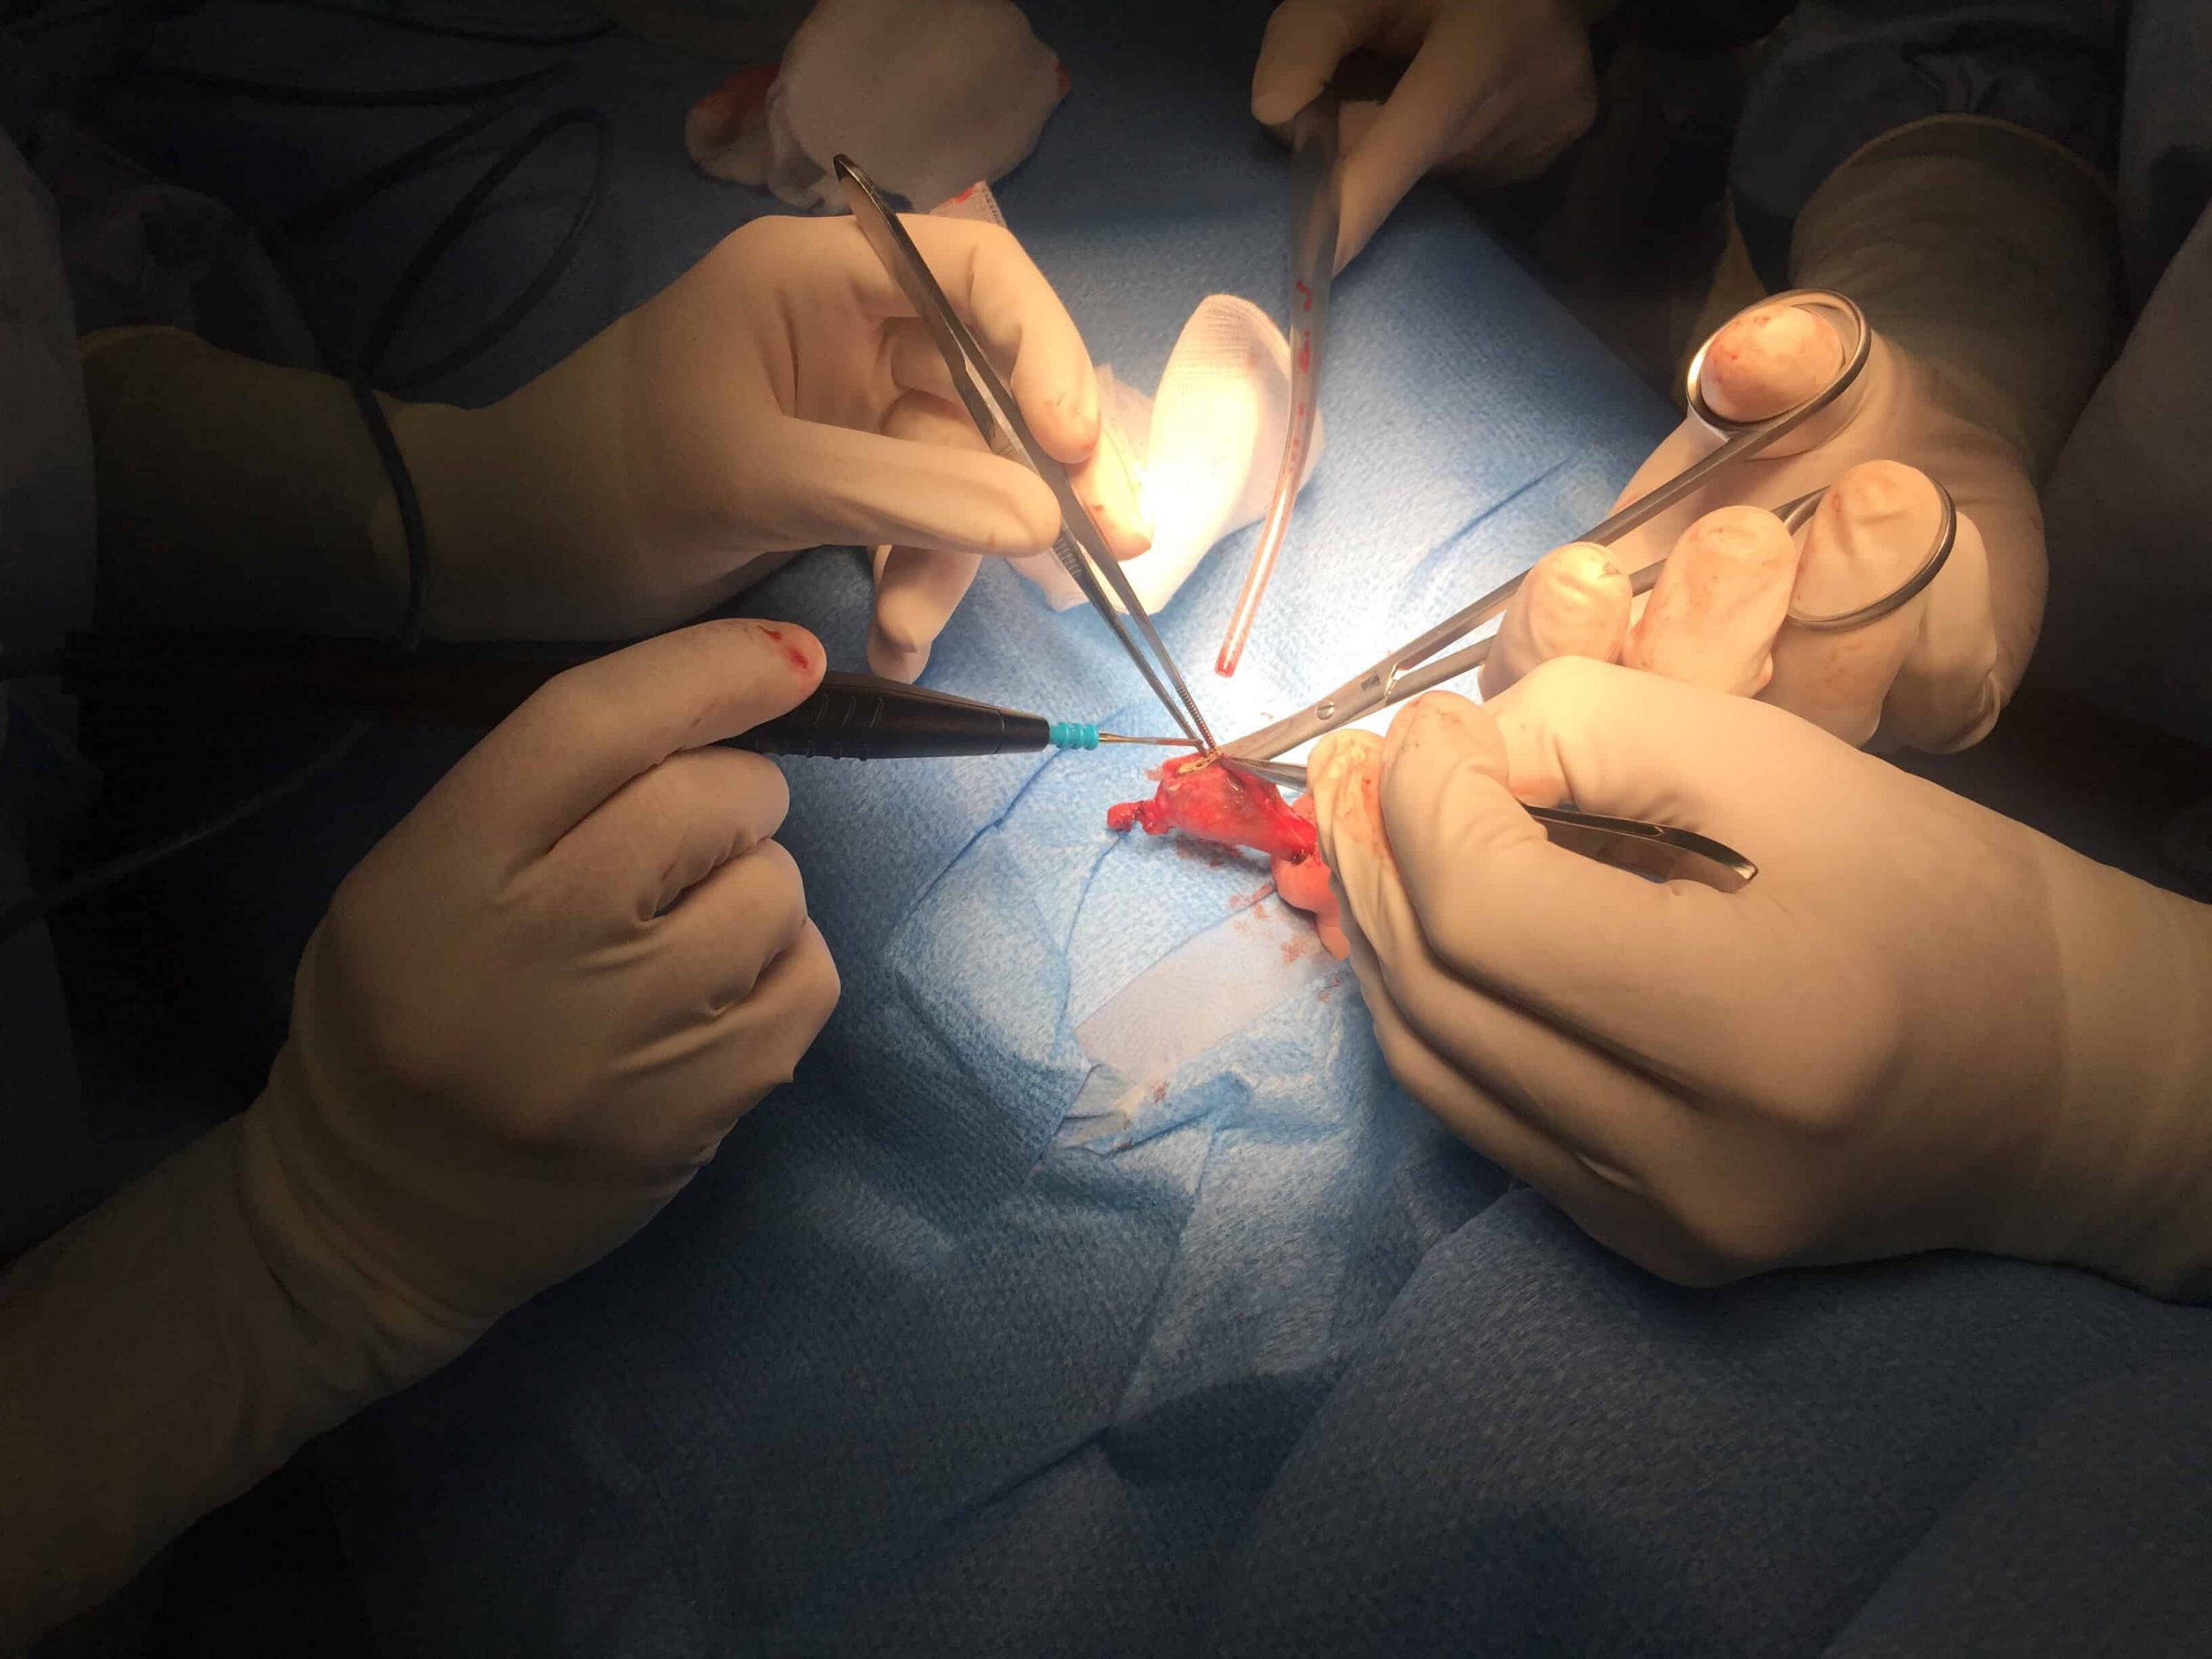 ניתוח קשירת צינורות הזרע (וזקטומיה, Vasectomy)